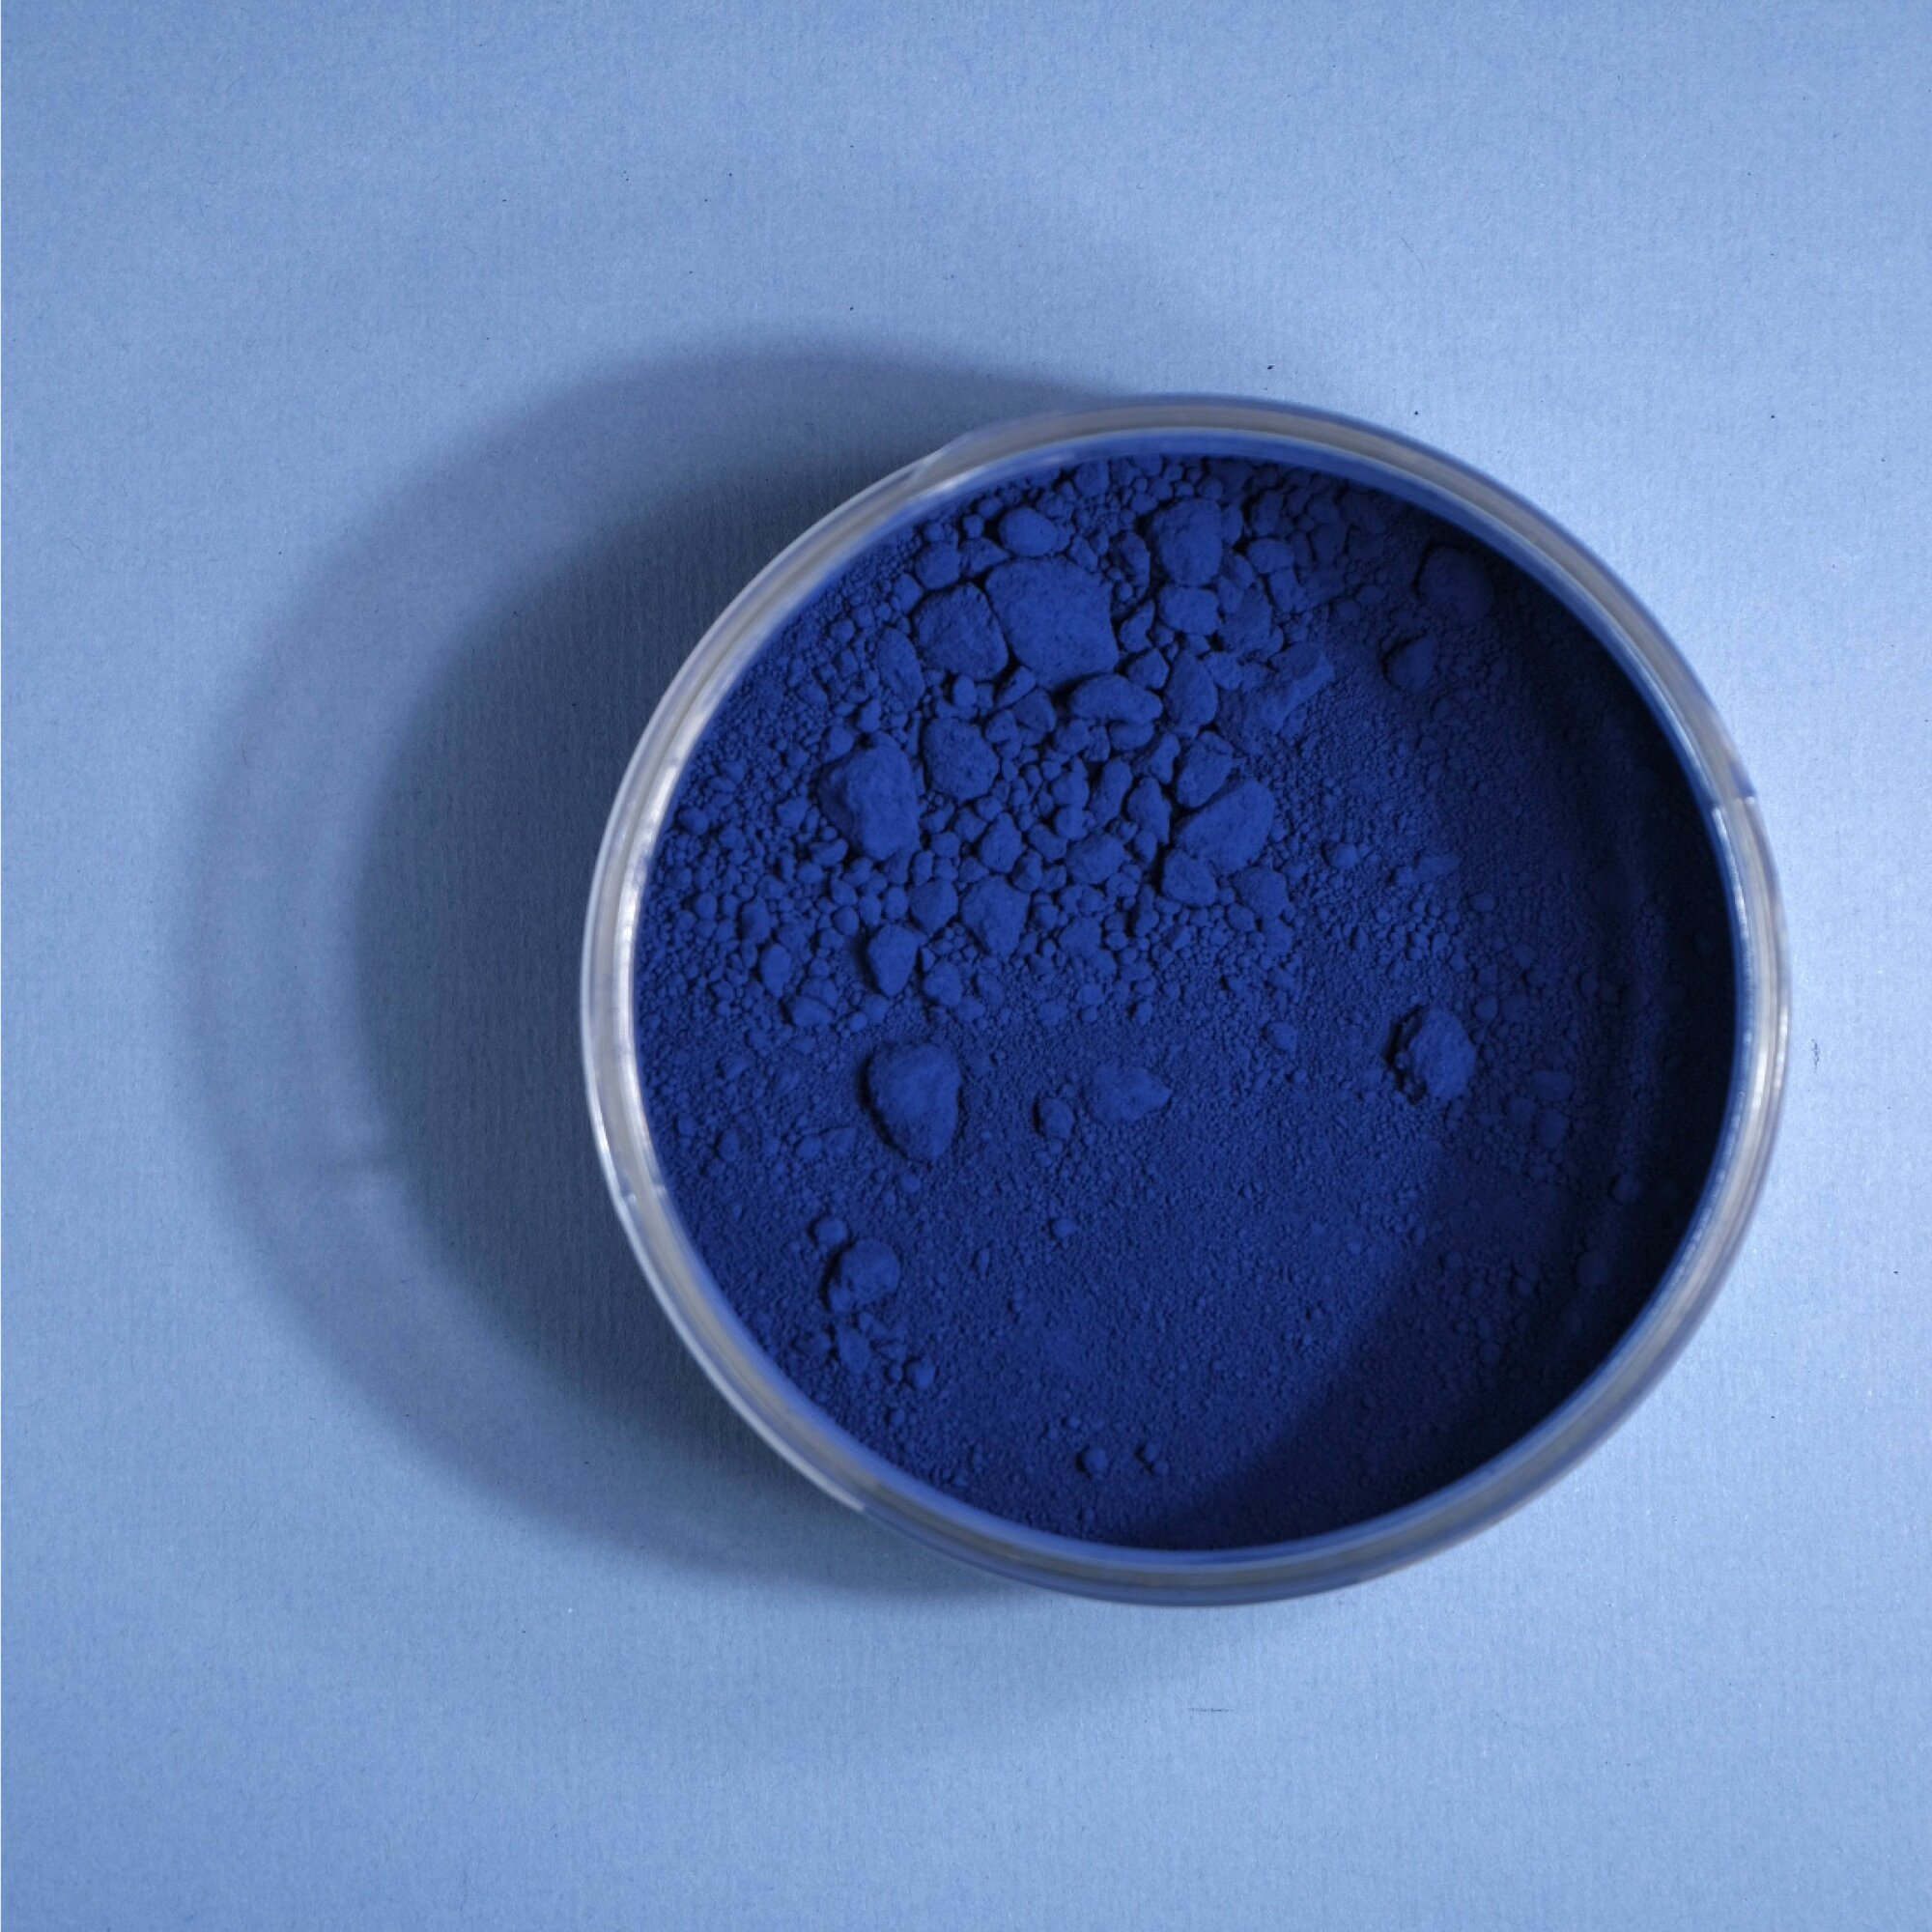 Краситель пищевой жирорастворимый ORNANDO Темно-Синий, 30гр